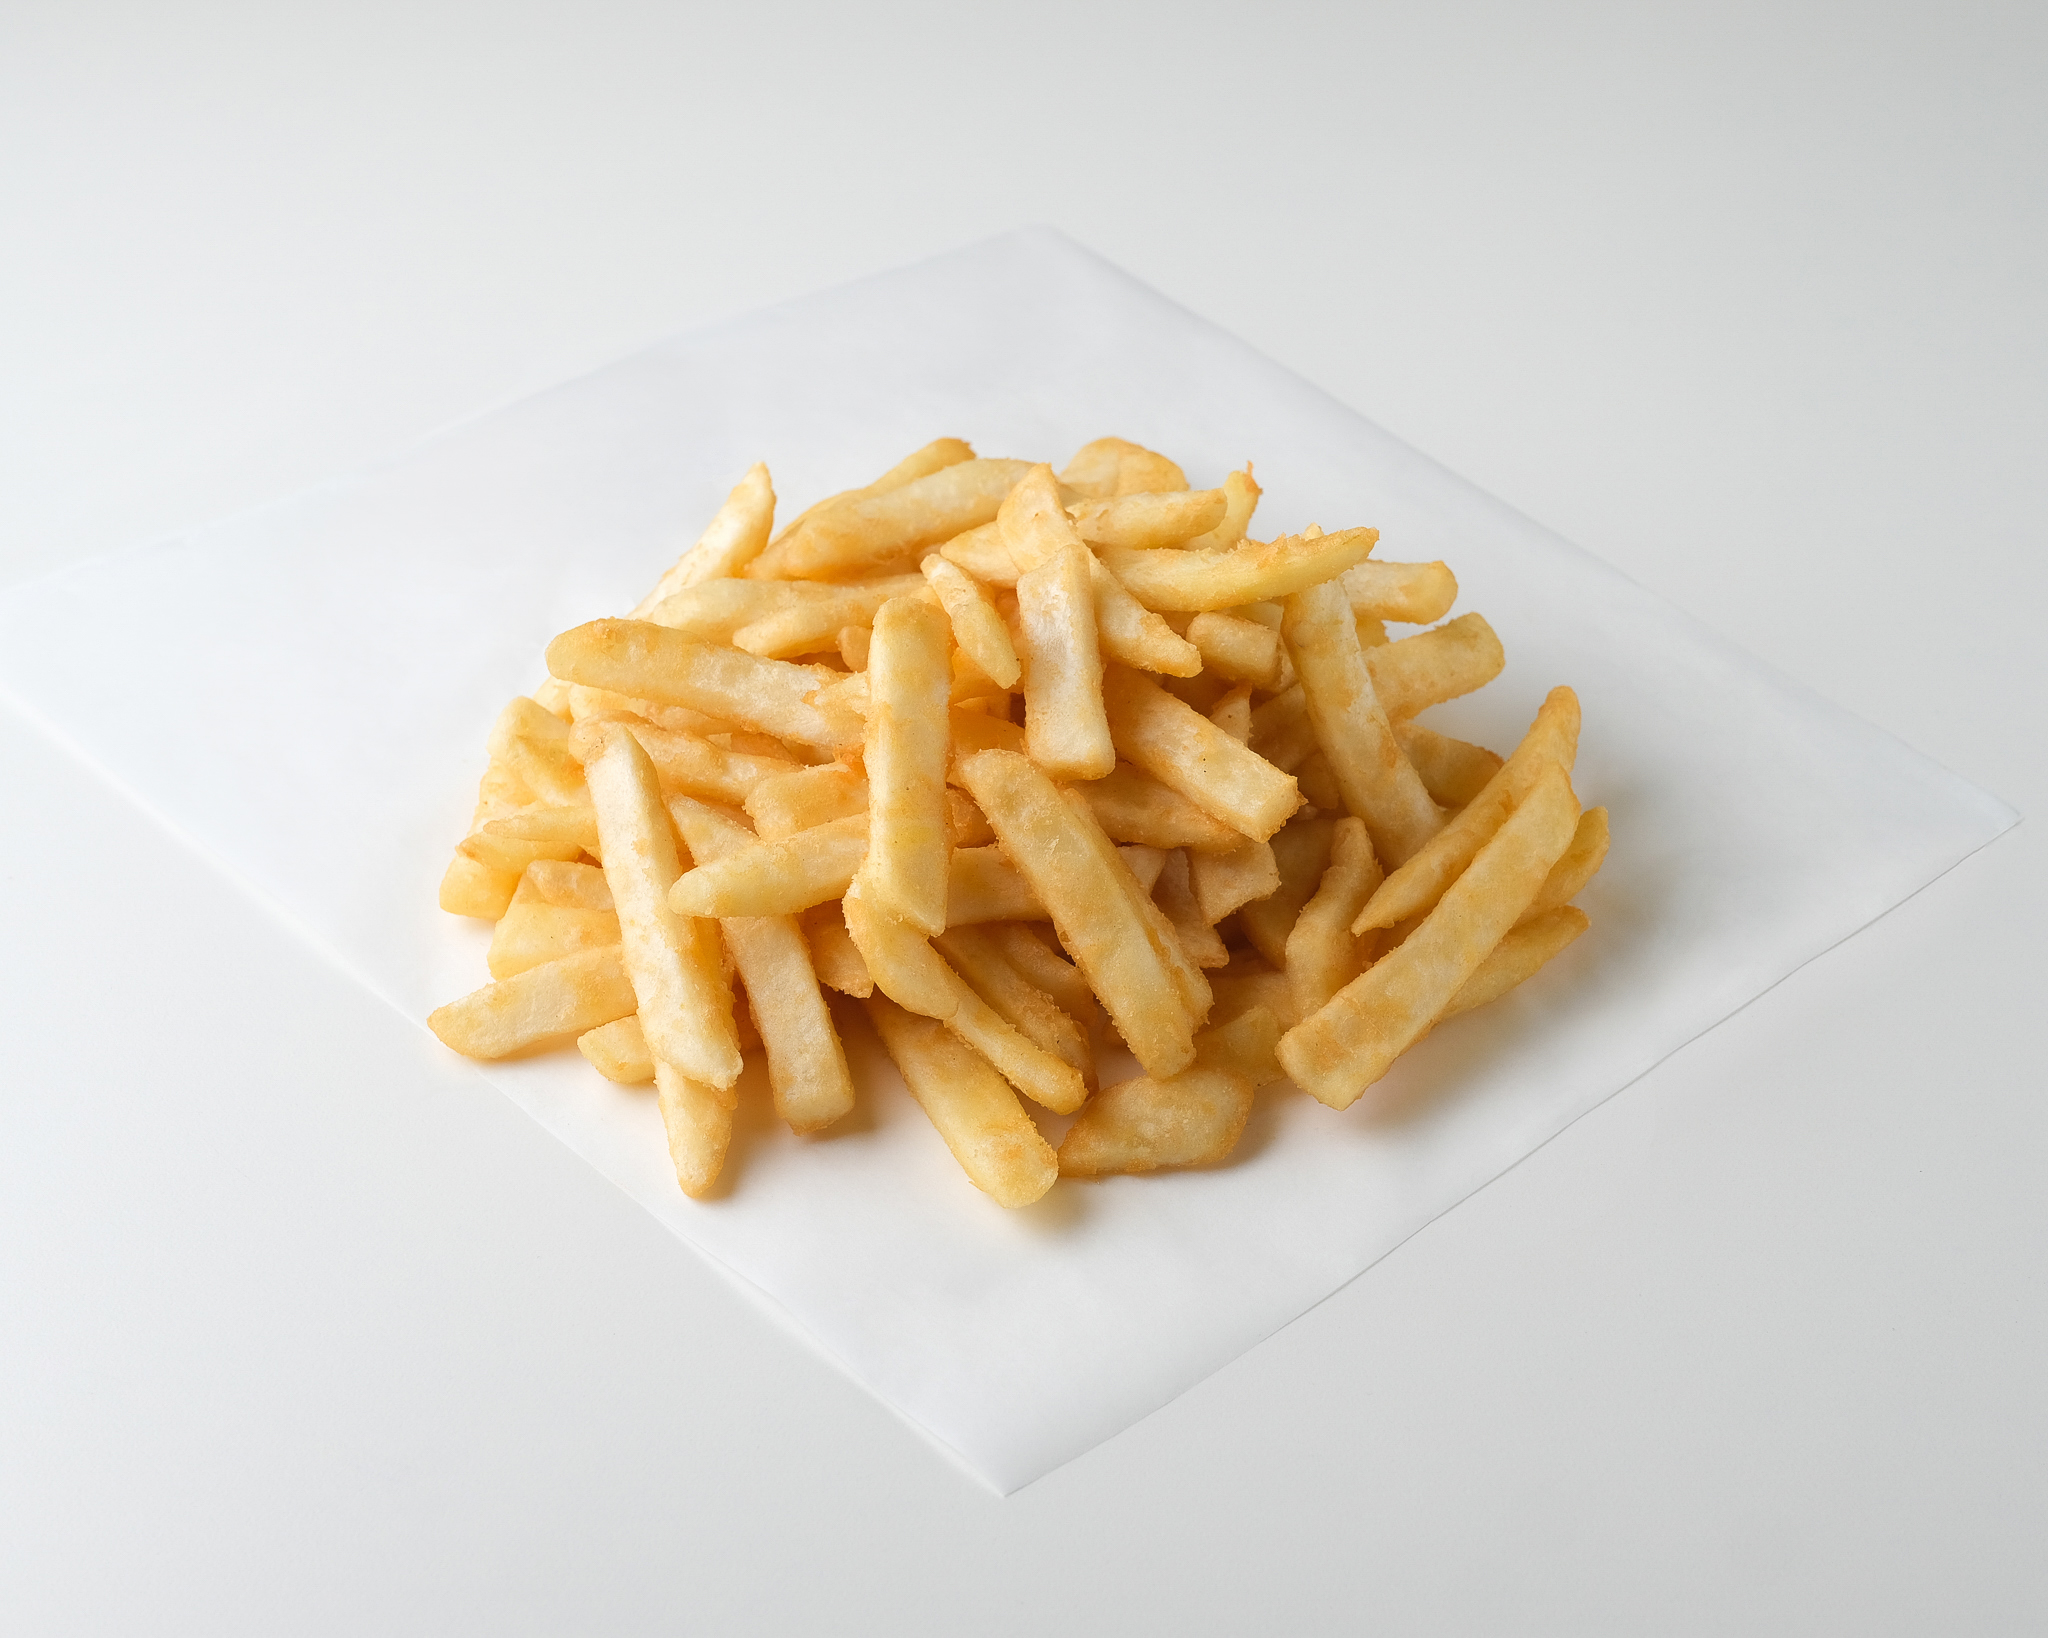 Ultra-crisp steak cut fries